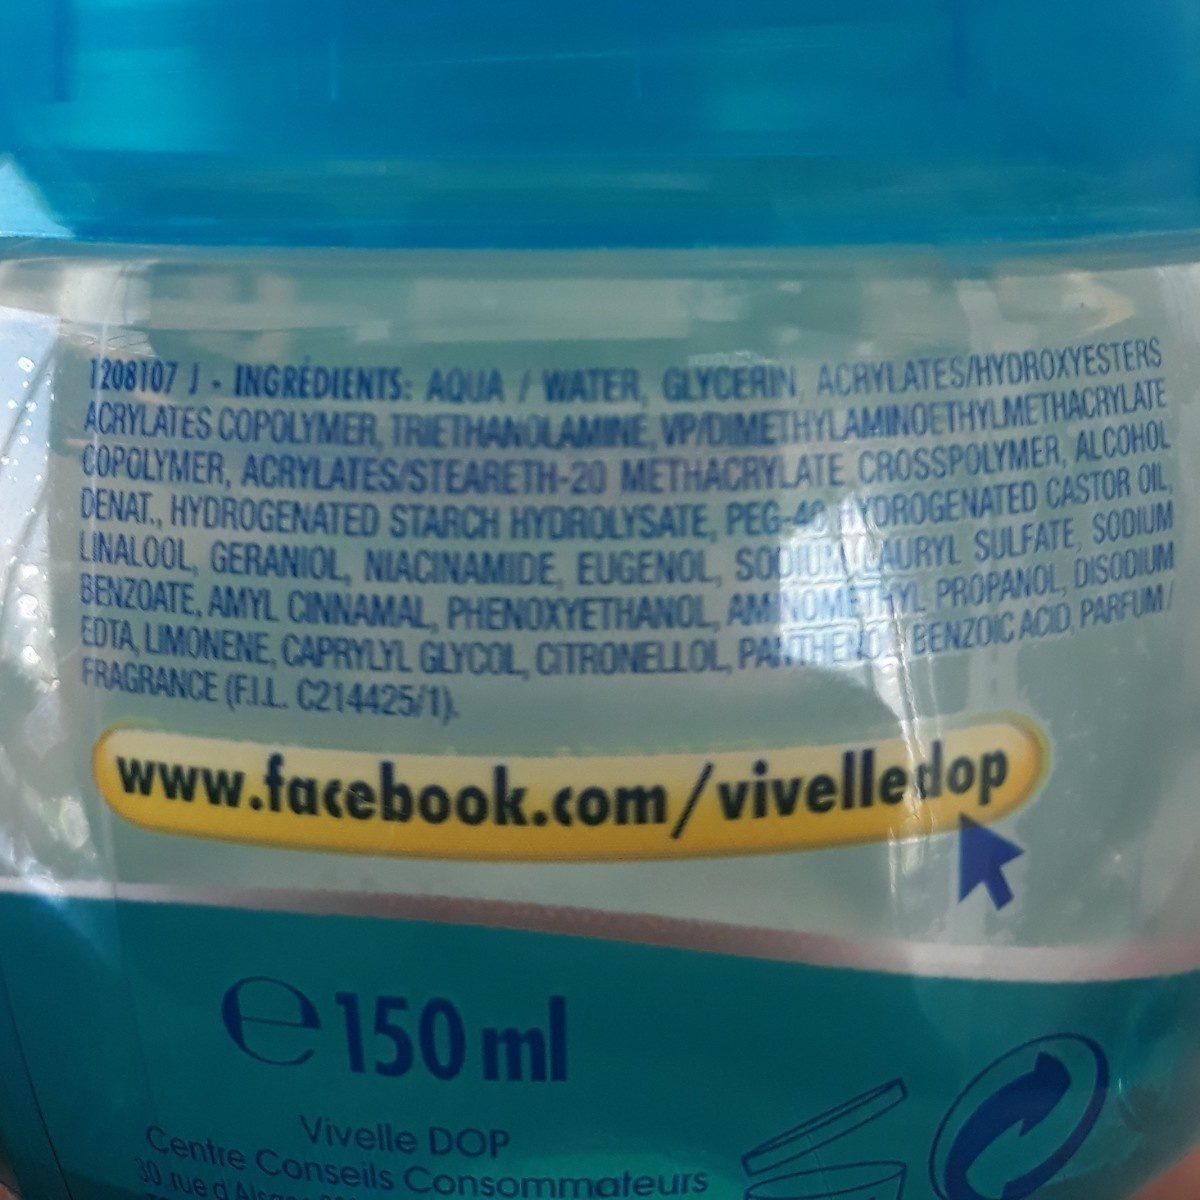 Vivelle dop - Ingredients - fr